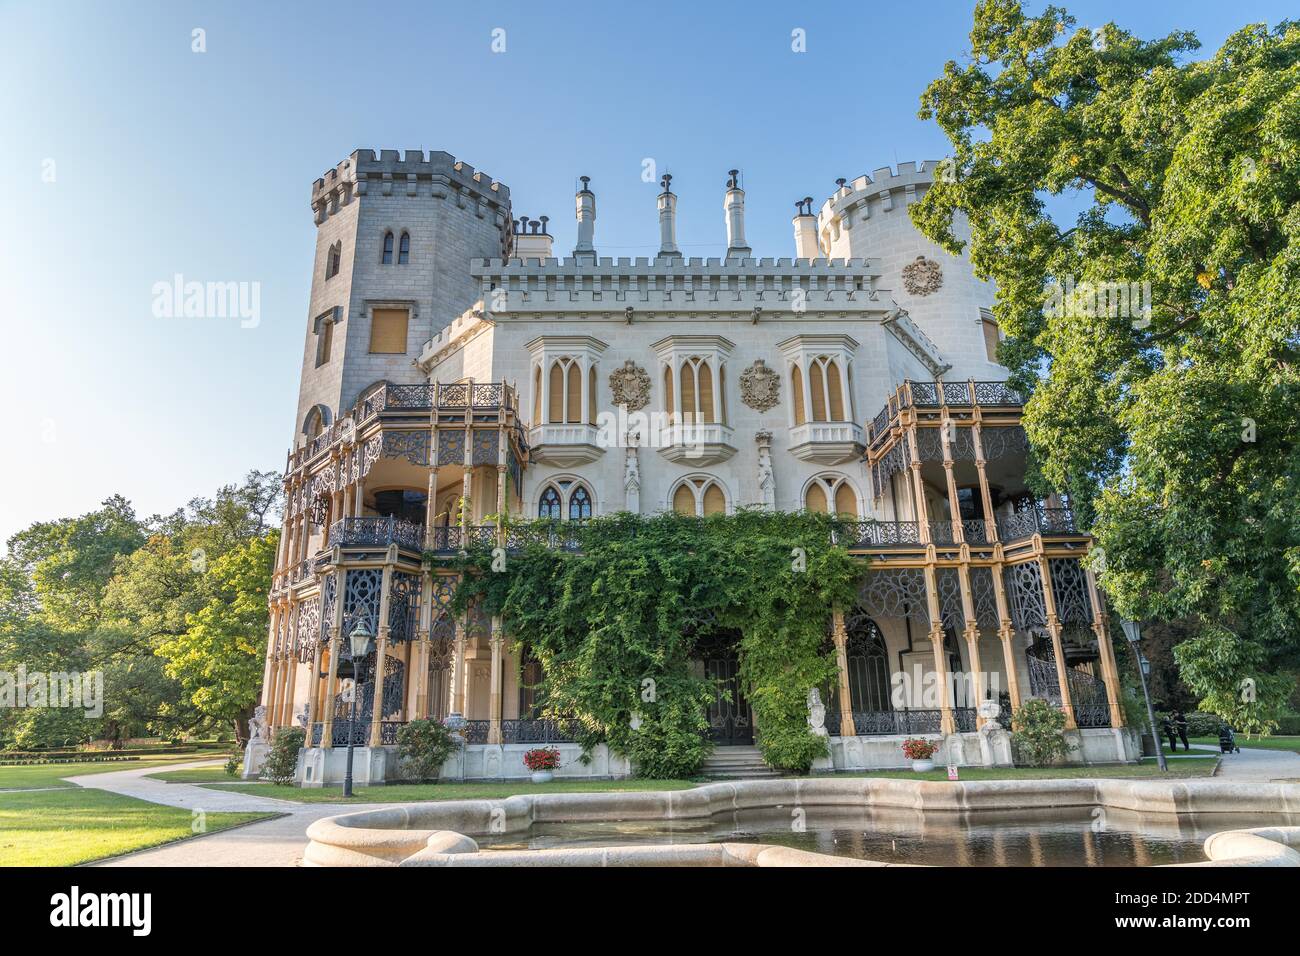 Schöne Renaissance-Schloss Hluboka in der Tschechischen Republik befindet sich in südböhmen. Sommerwetter mit blauem Himmel und Rosengärten. UNESCO-Weltkulturerbe Stockfoto